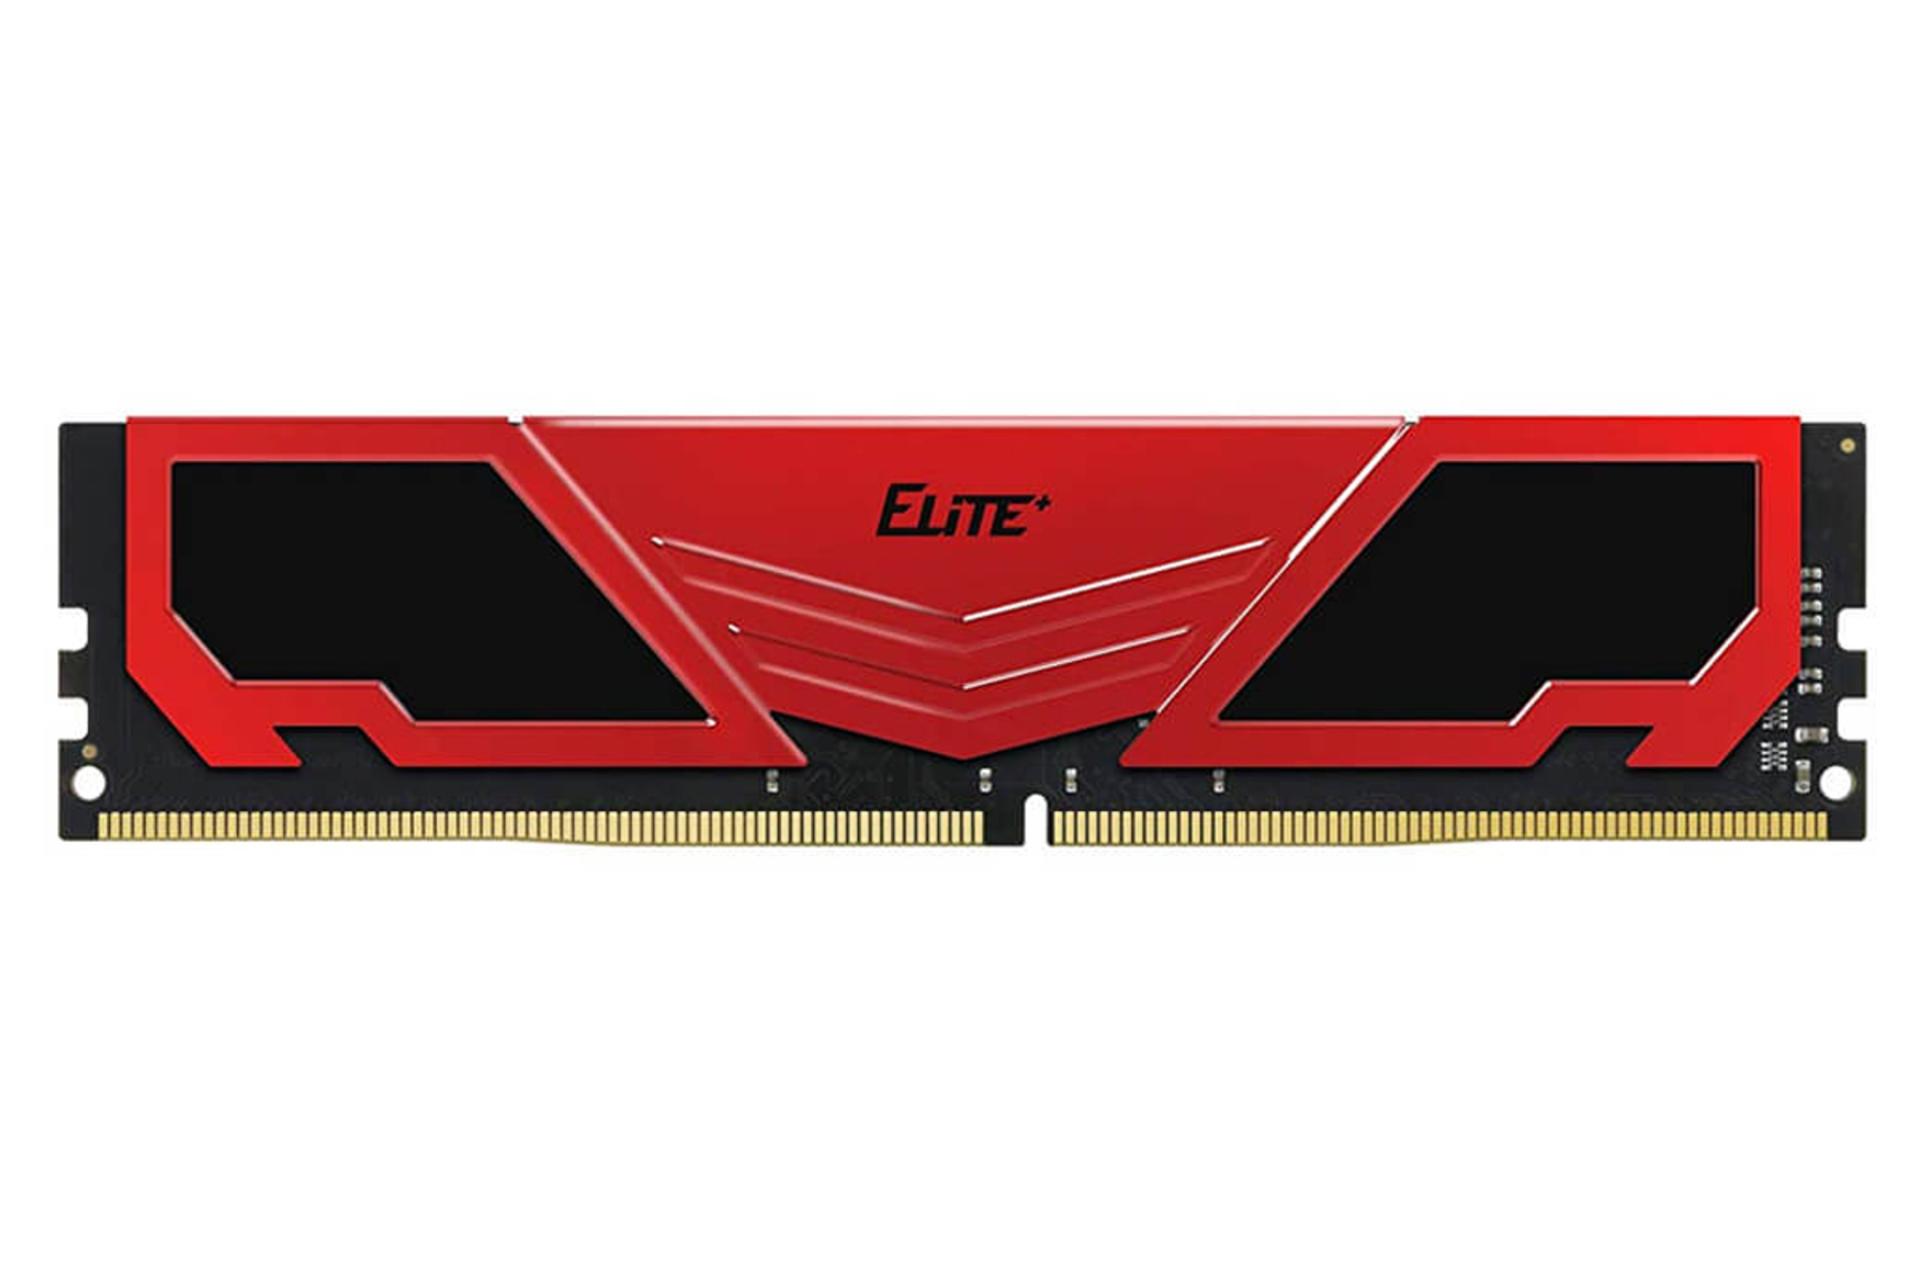 رم تیم گروپ ELITE PLUS ظرفیت 16 گیگابایت از نوع DDR4-3200